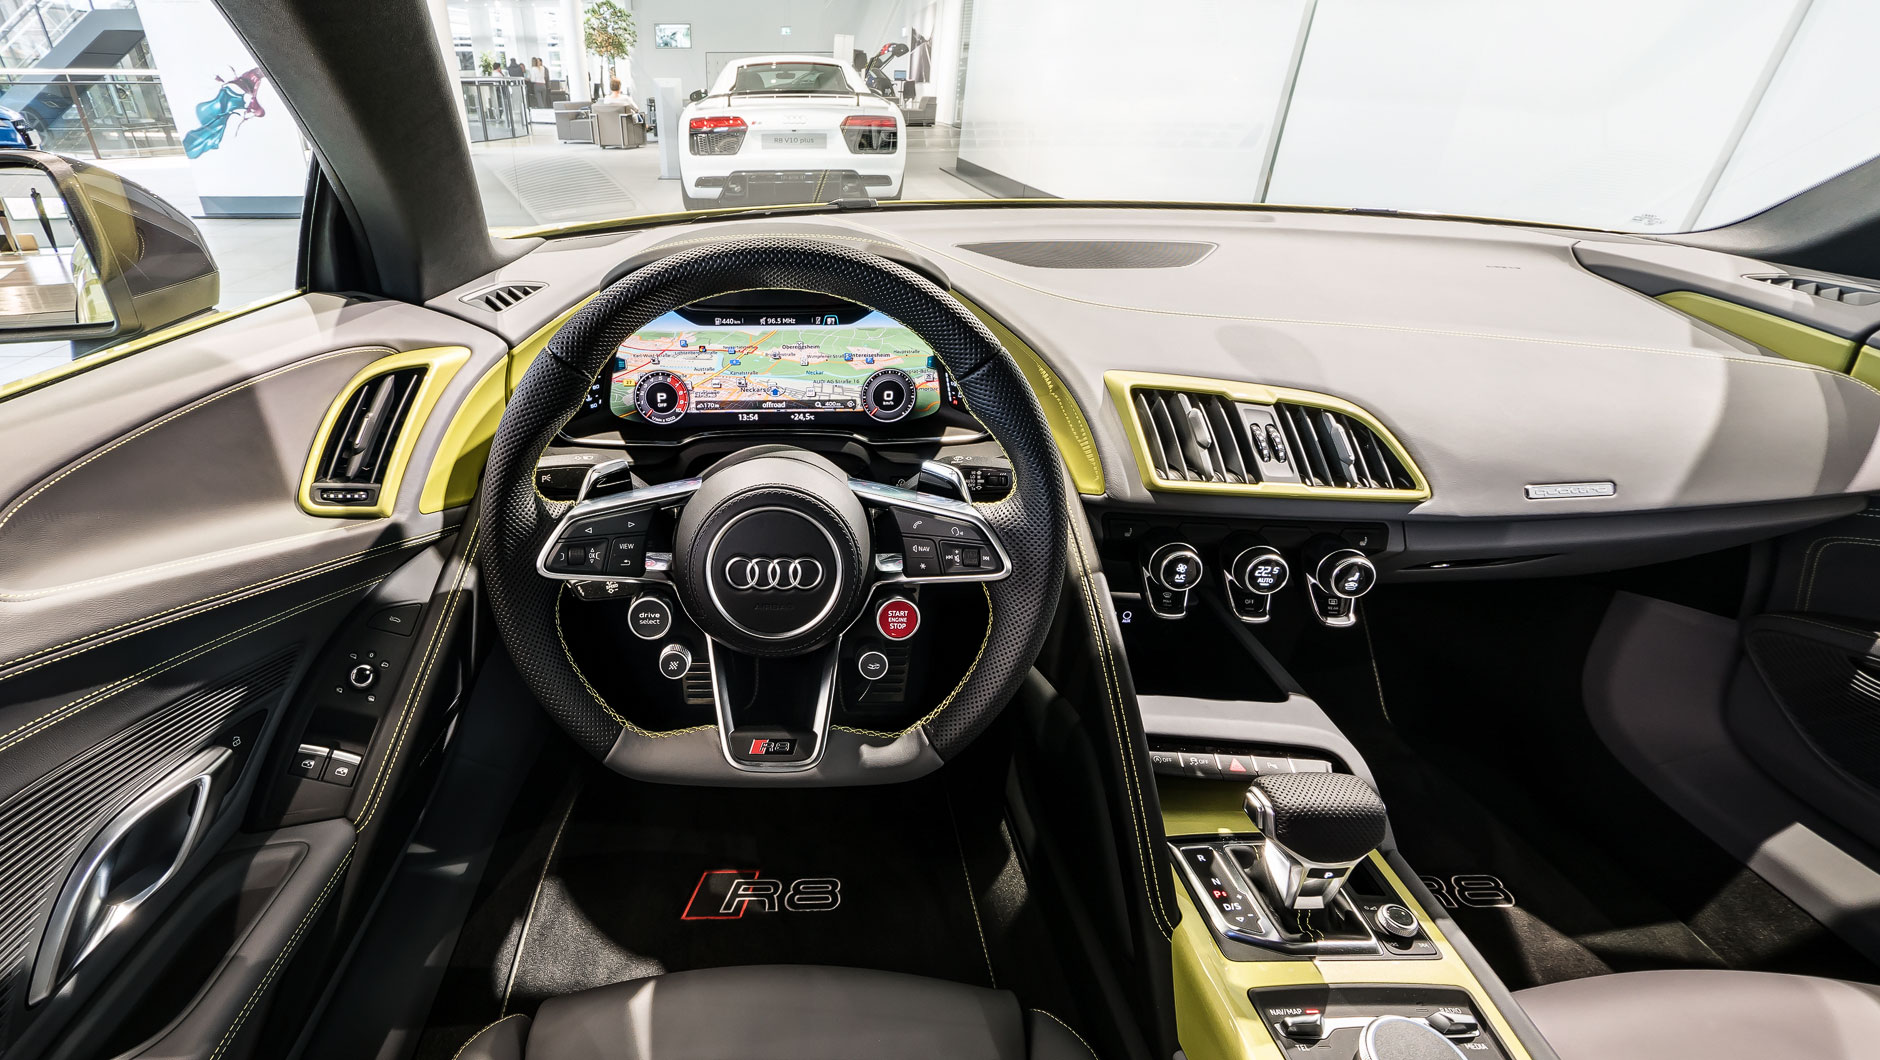 Innenraum / Interior eines Audi Spyder V10 mit Luftausströmer und Dekoreinlagen in Wagenfarbe sowie Lederausstattung in Leder Feinnappa mit Rautensteppung